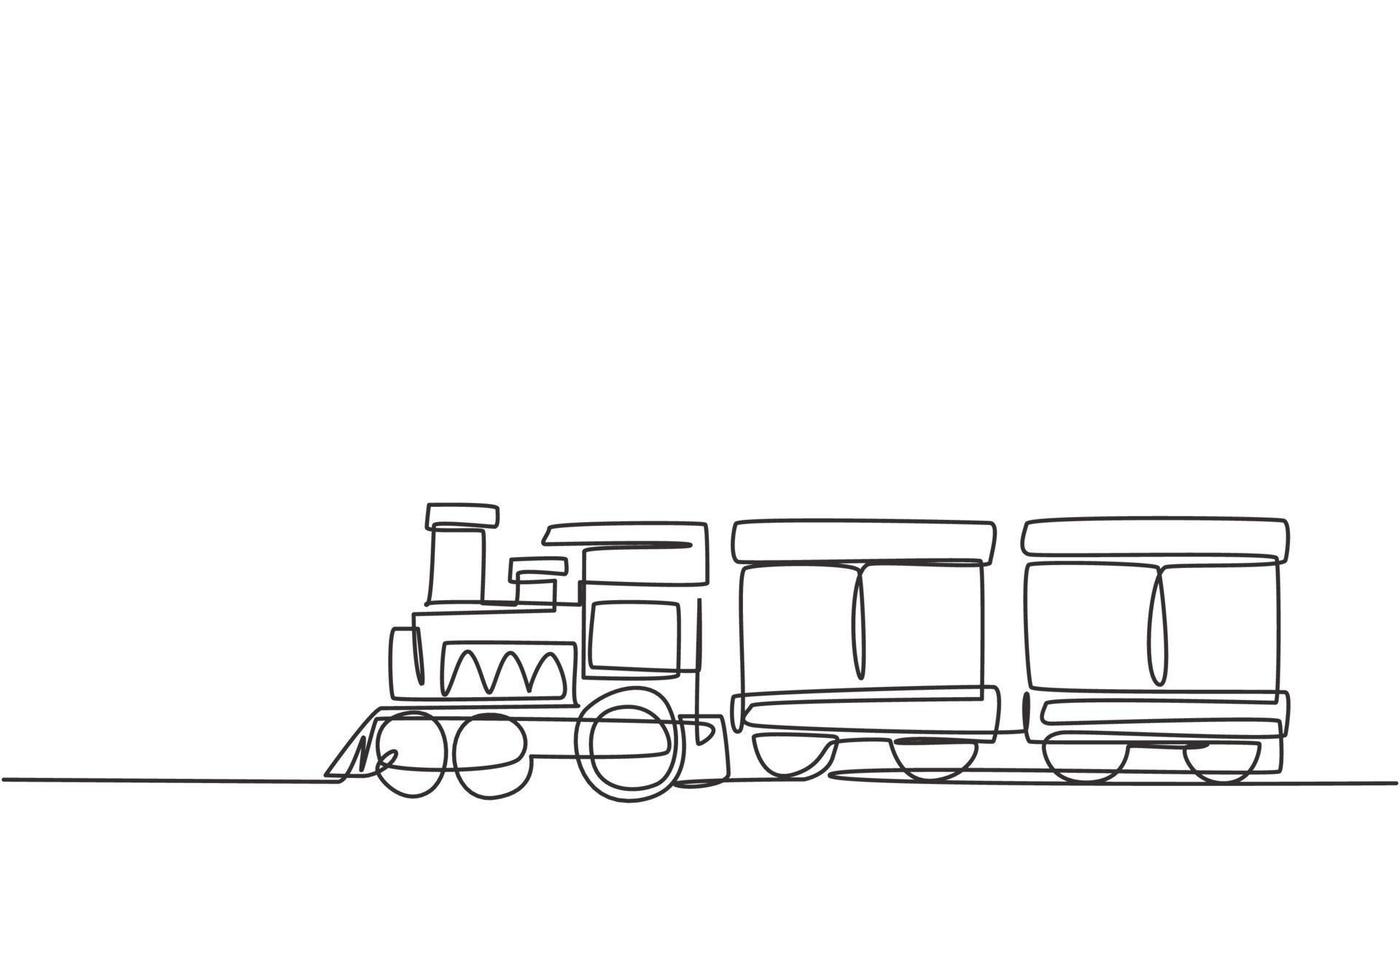 dibujo de una sola línea de una locomotora de tren con dos vagones en forma de un sistema de vapor itinerante en un parque de atracciones para transportar pasajeros. Ilustración de vector gráfico de diseño de dibujo de línea continua